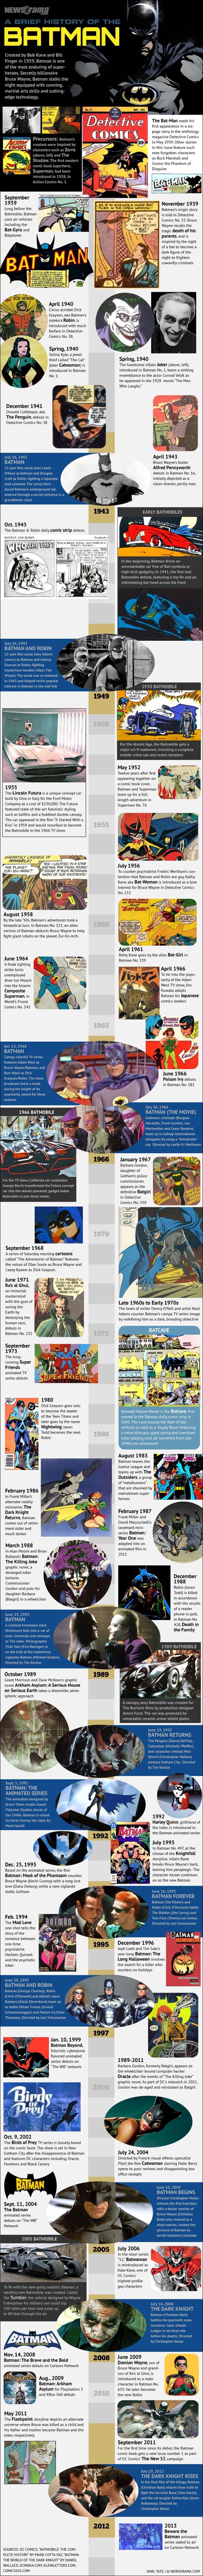 75 ans de l’histoire de Batman en une infographie